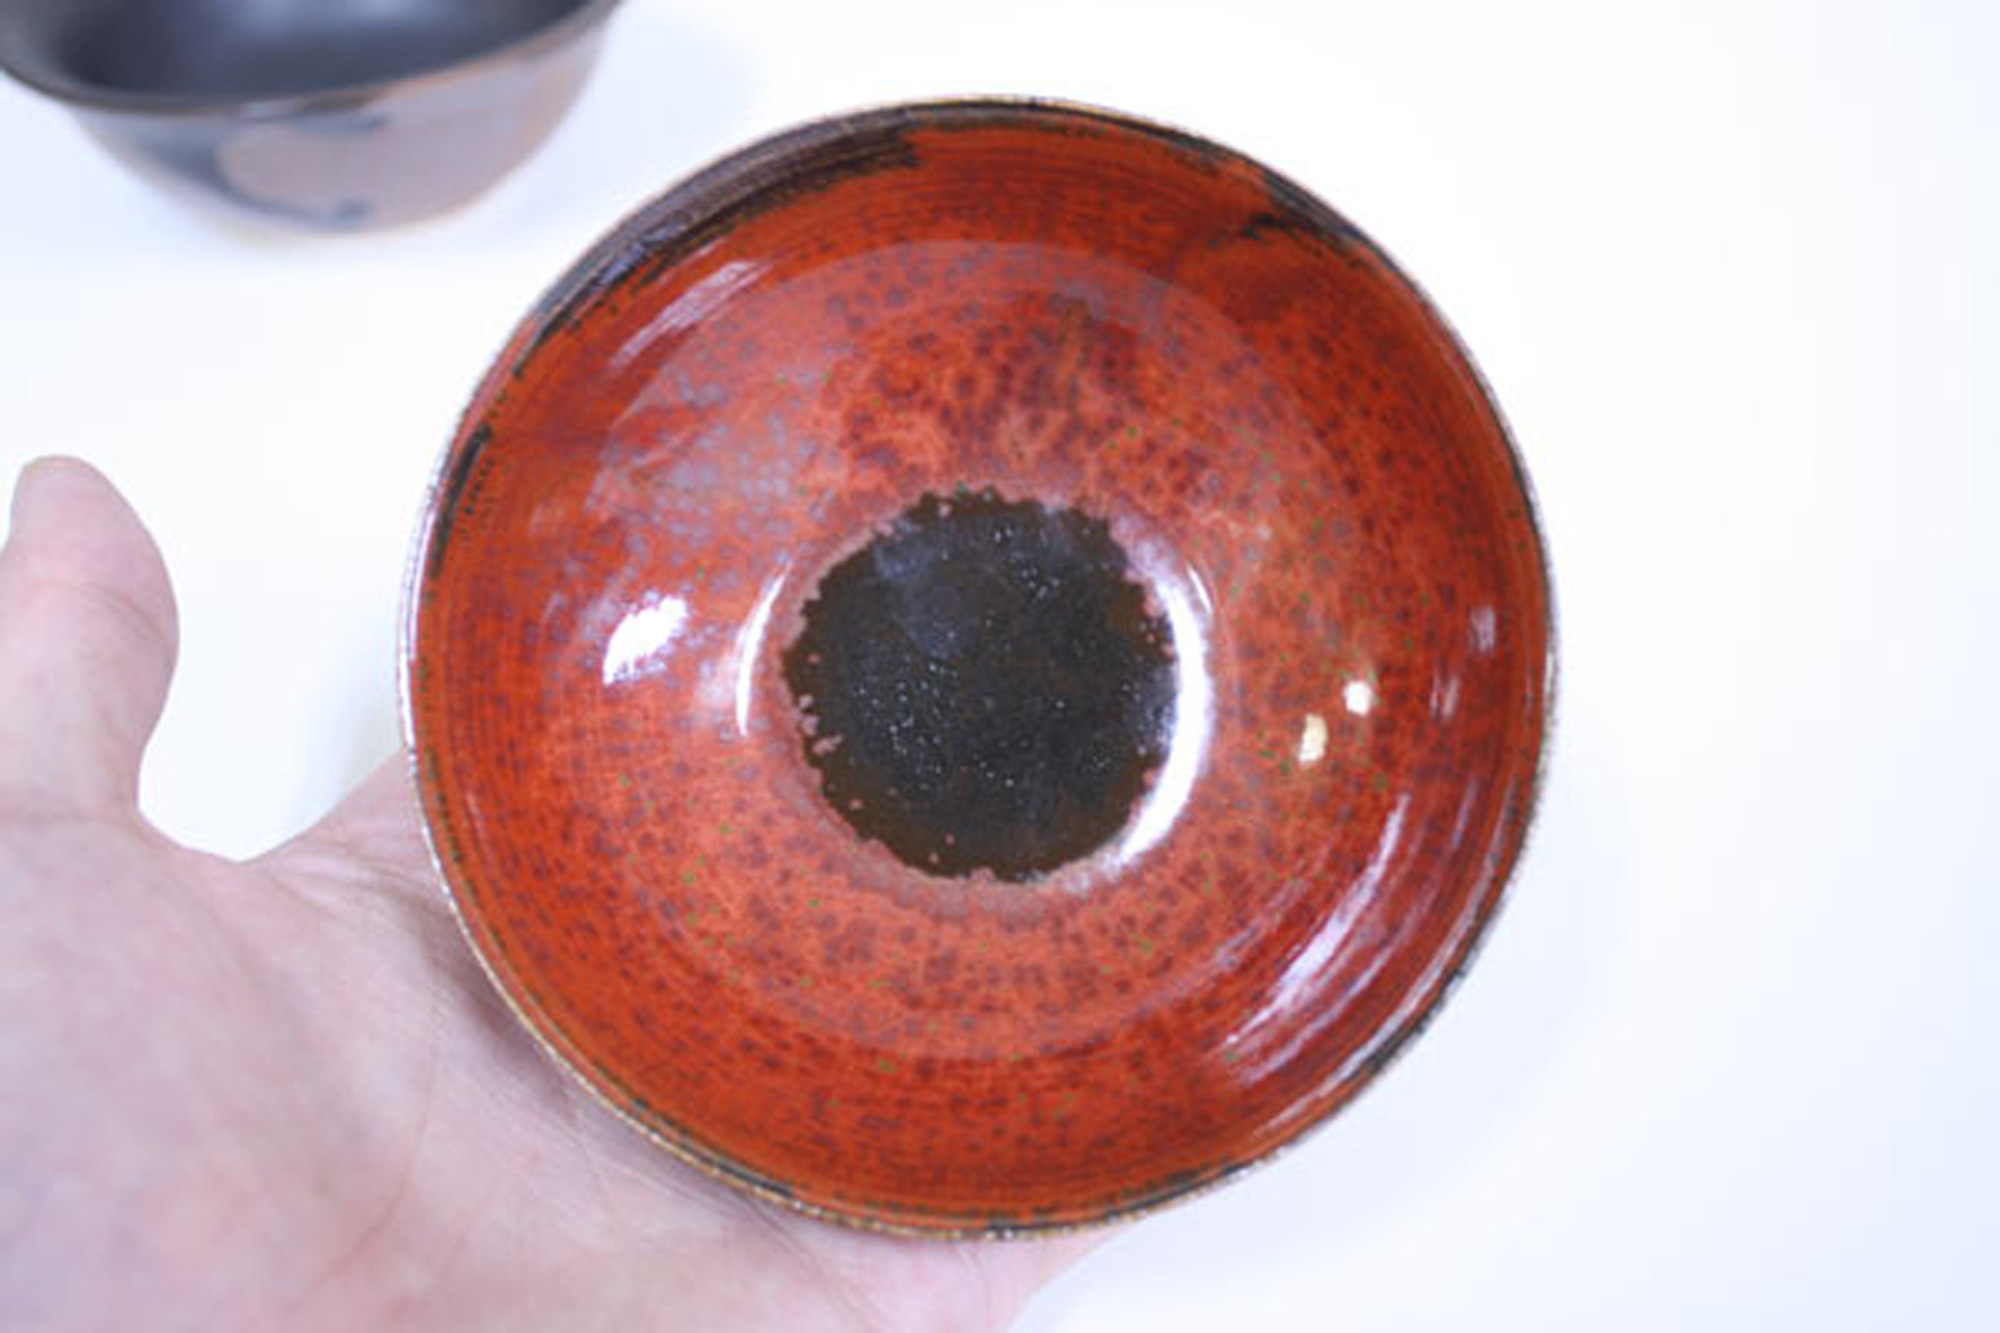 kunioosawa-ceramic-art